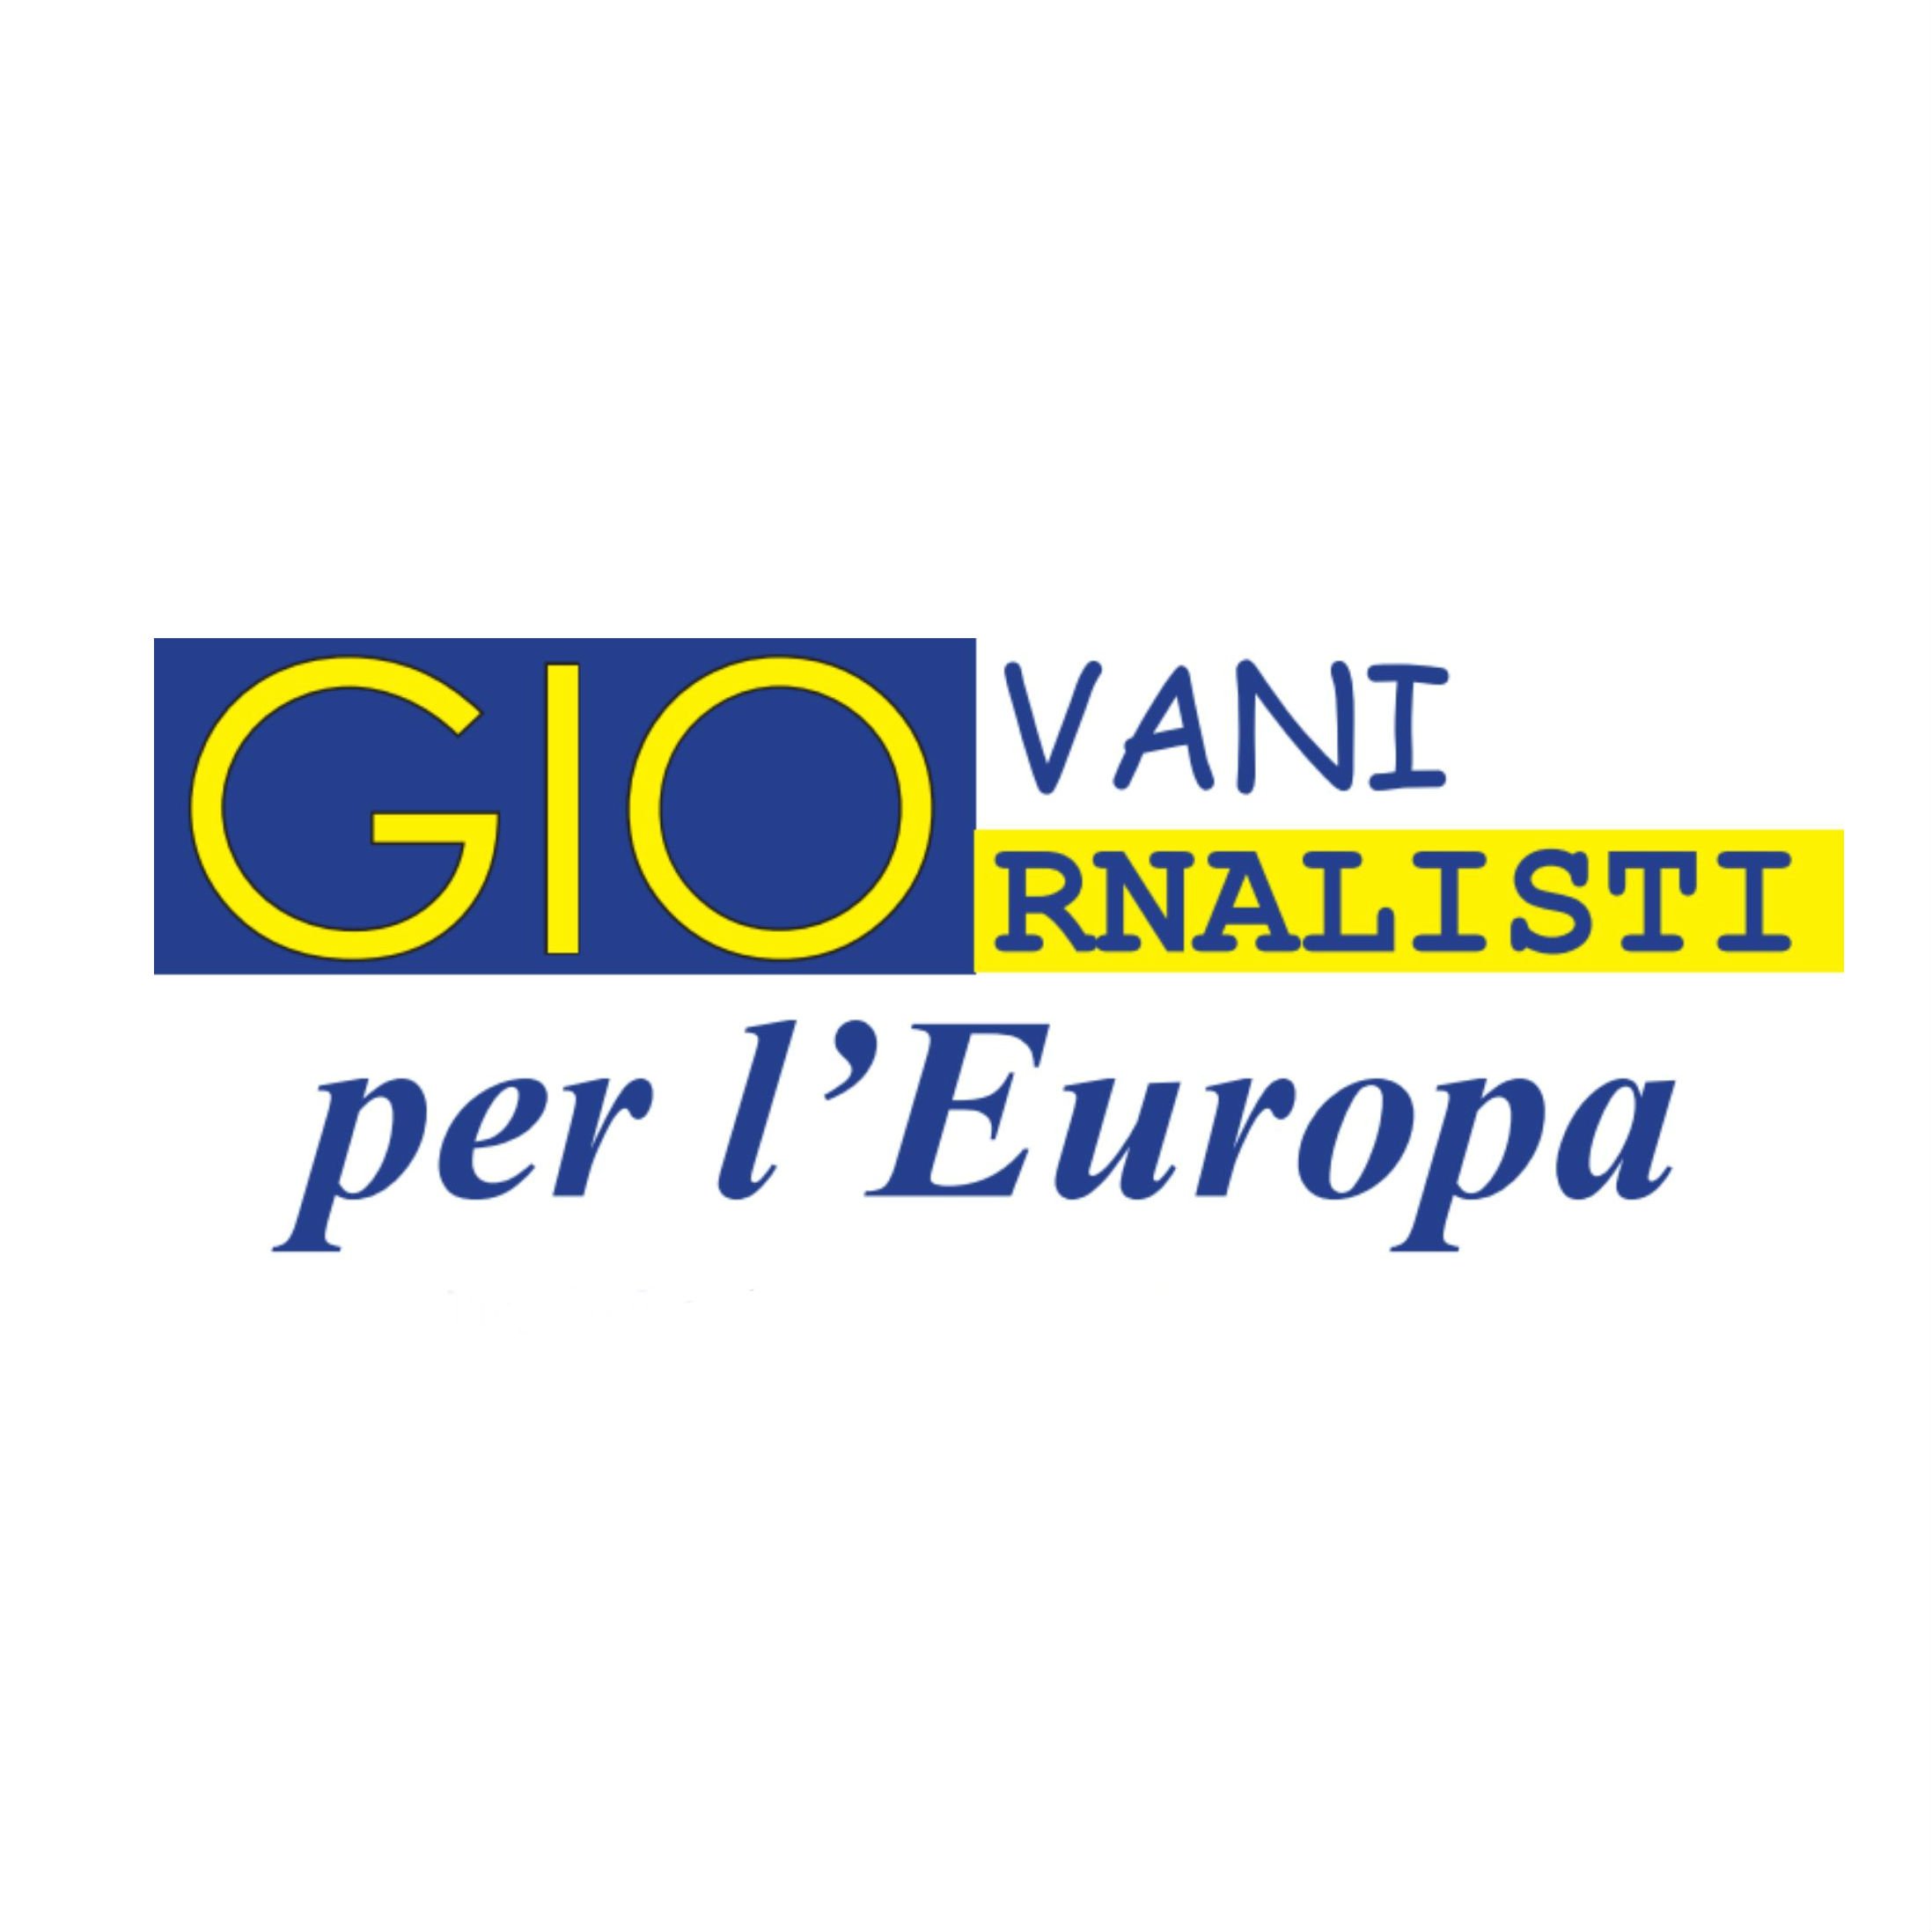 Profilo ufficiale del progetto della @regioneumbria Giovani giornalisti per l'Europa